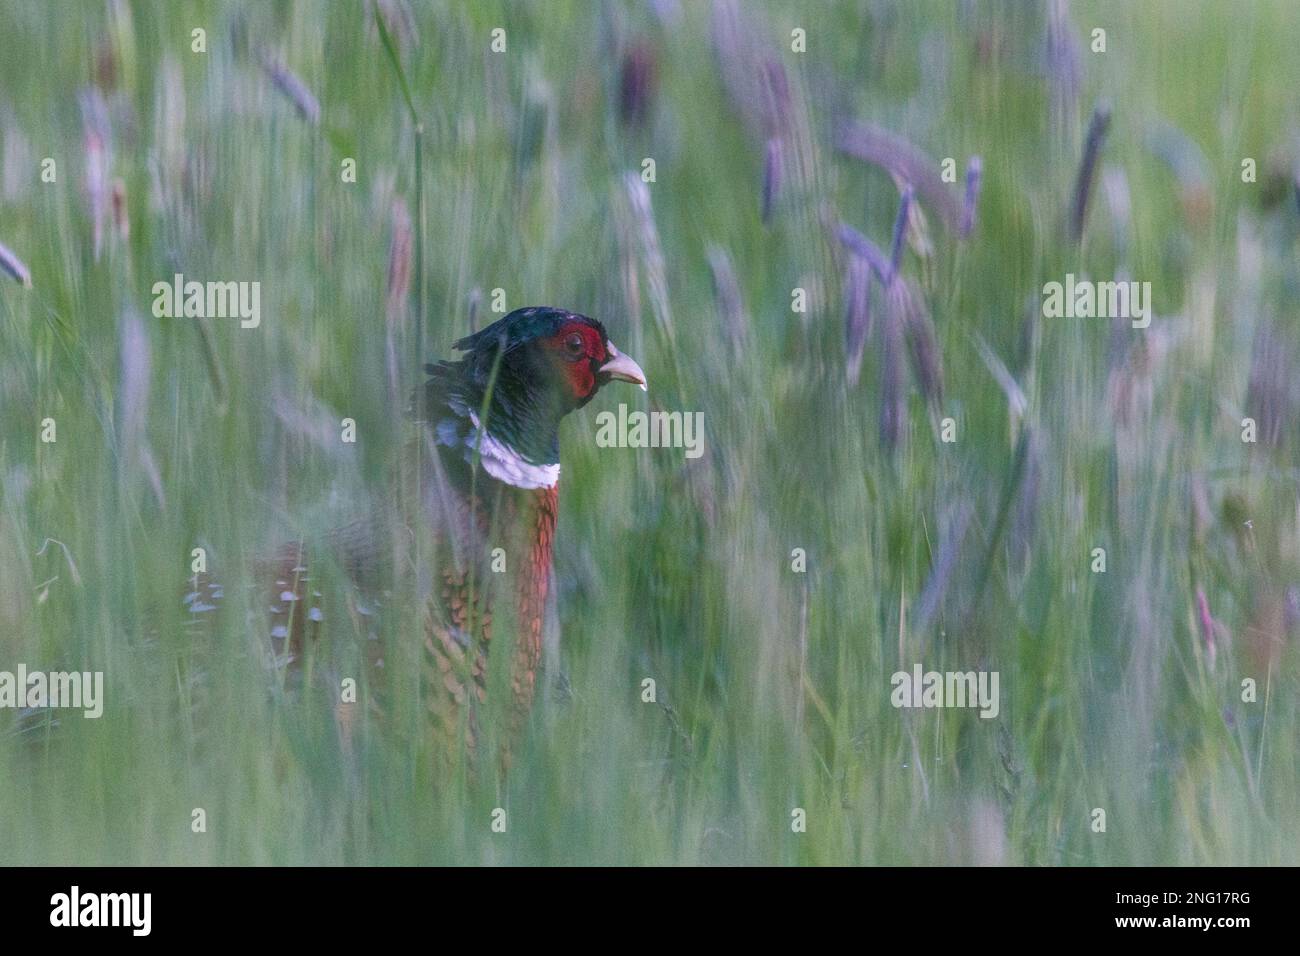 Jagdfasan in Wildblumenwiese, in Kamera schauend - Gemeiner Fasan in Wildblumenwiesen, der in die Kamera schaut Stockfoto